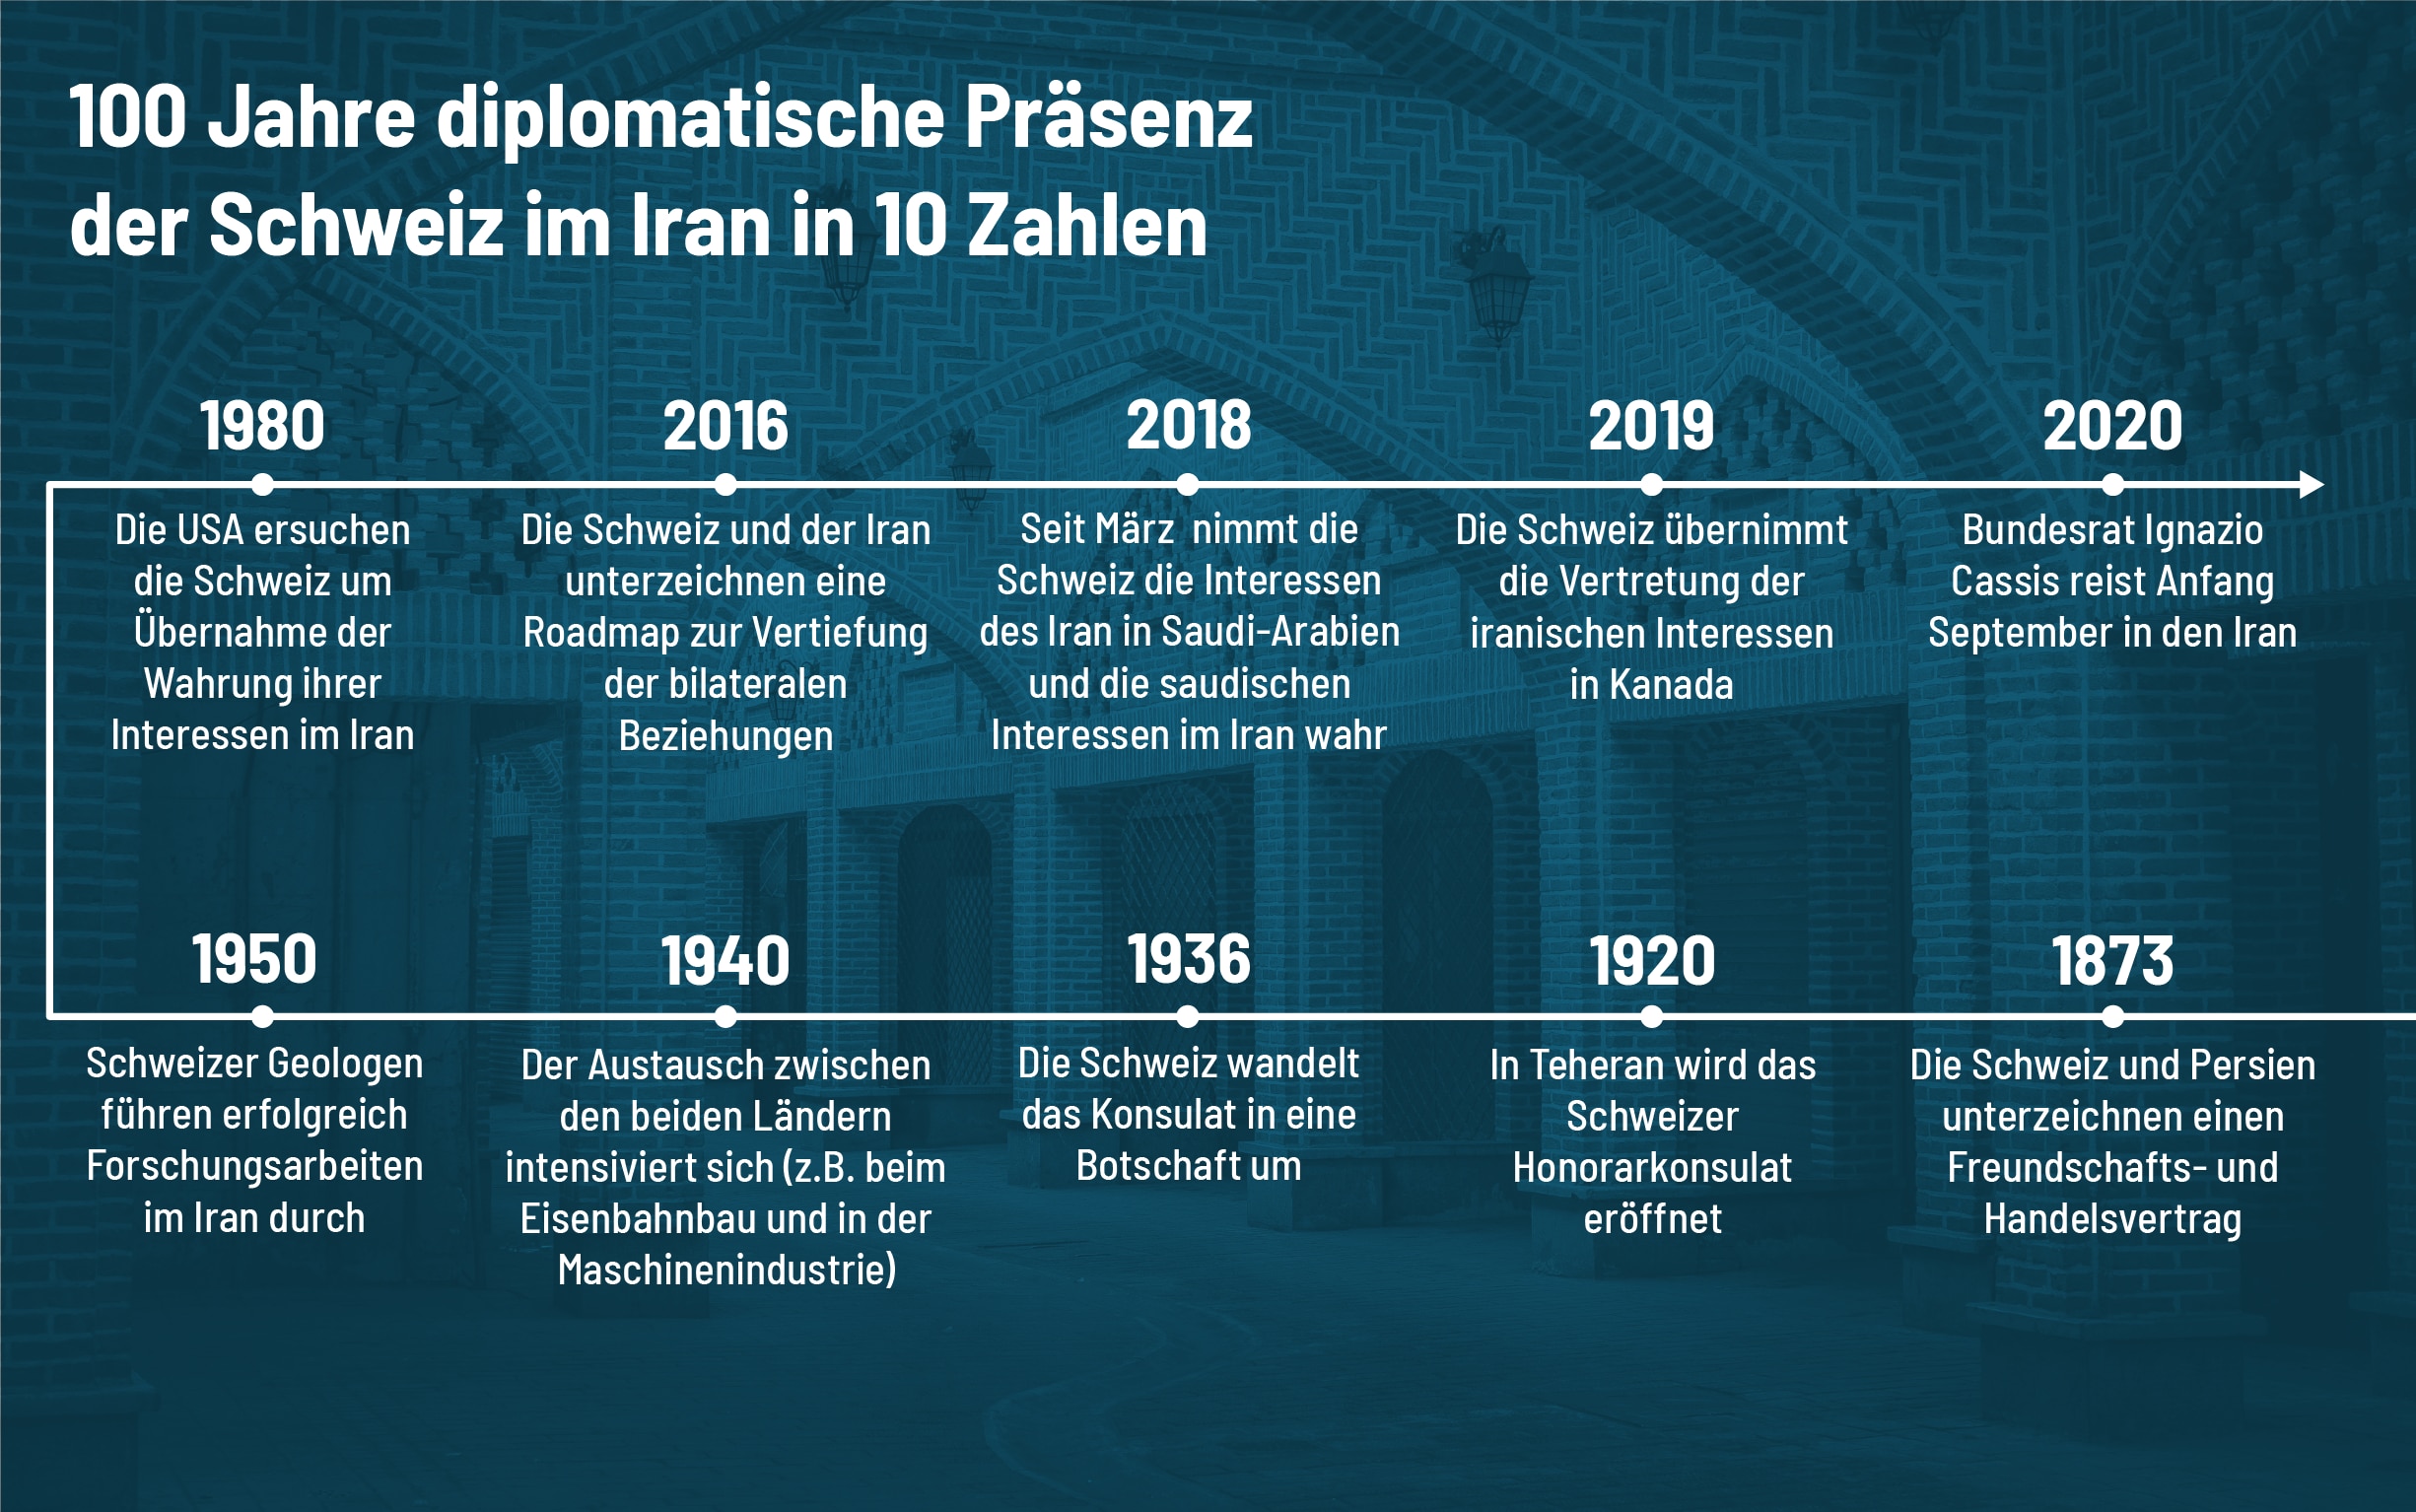 Infographie zu den 100 Jahre diplomatische Präsenz der Schweiz im Iran in 10 Zahlen.